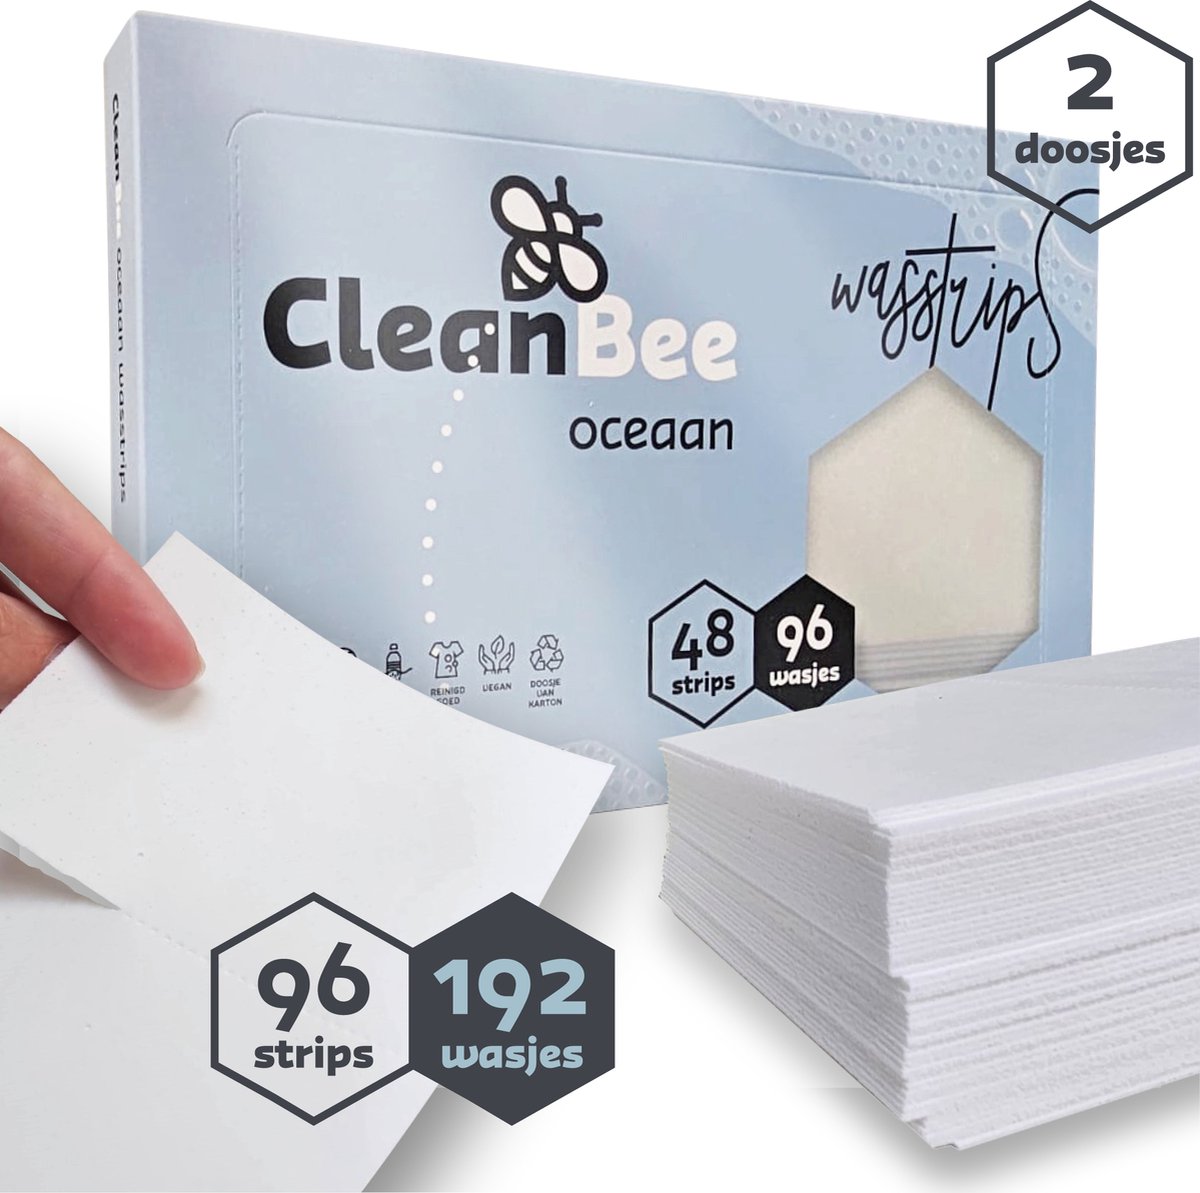 CleanBee® Wasstrips 192 Wasbeurten Oceaan - Wasmiddeldoekjes - Wasstrips Proefpakket - Wasmiddel - Wasvellen - Detergent Sheets - Eco Laundry Strips - Plasticvrij - Biologisch - Eco Wasstrips